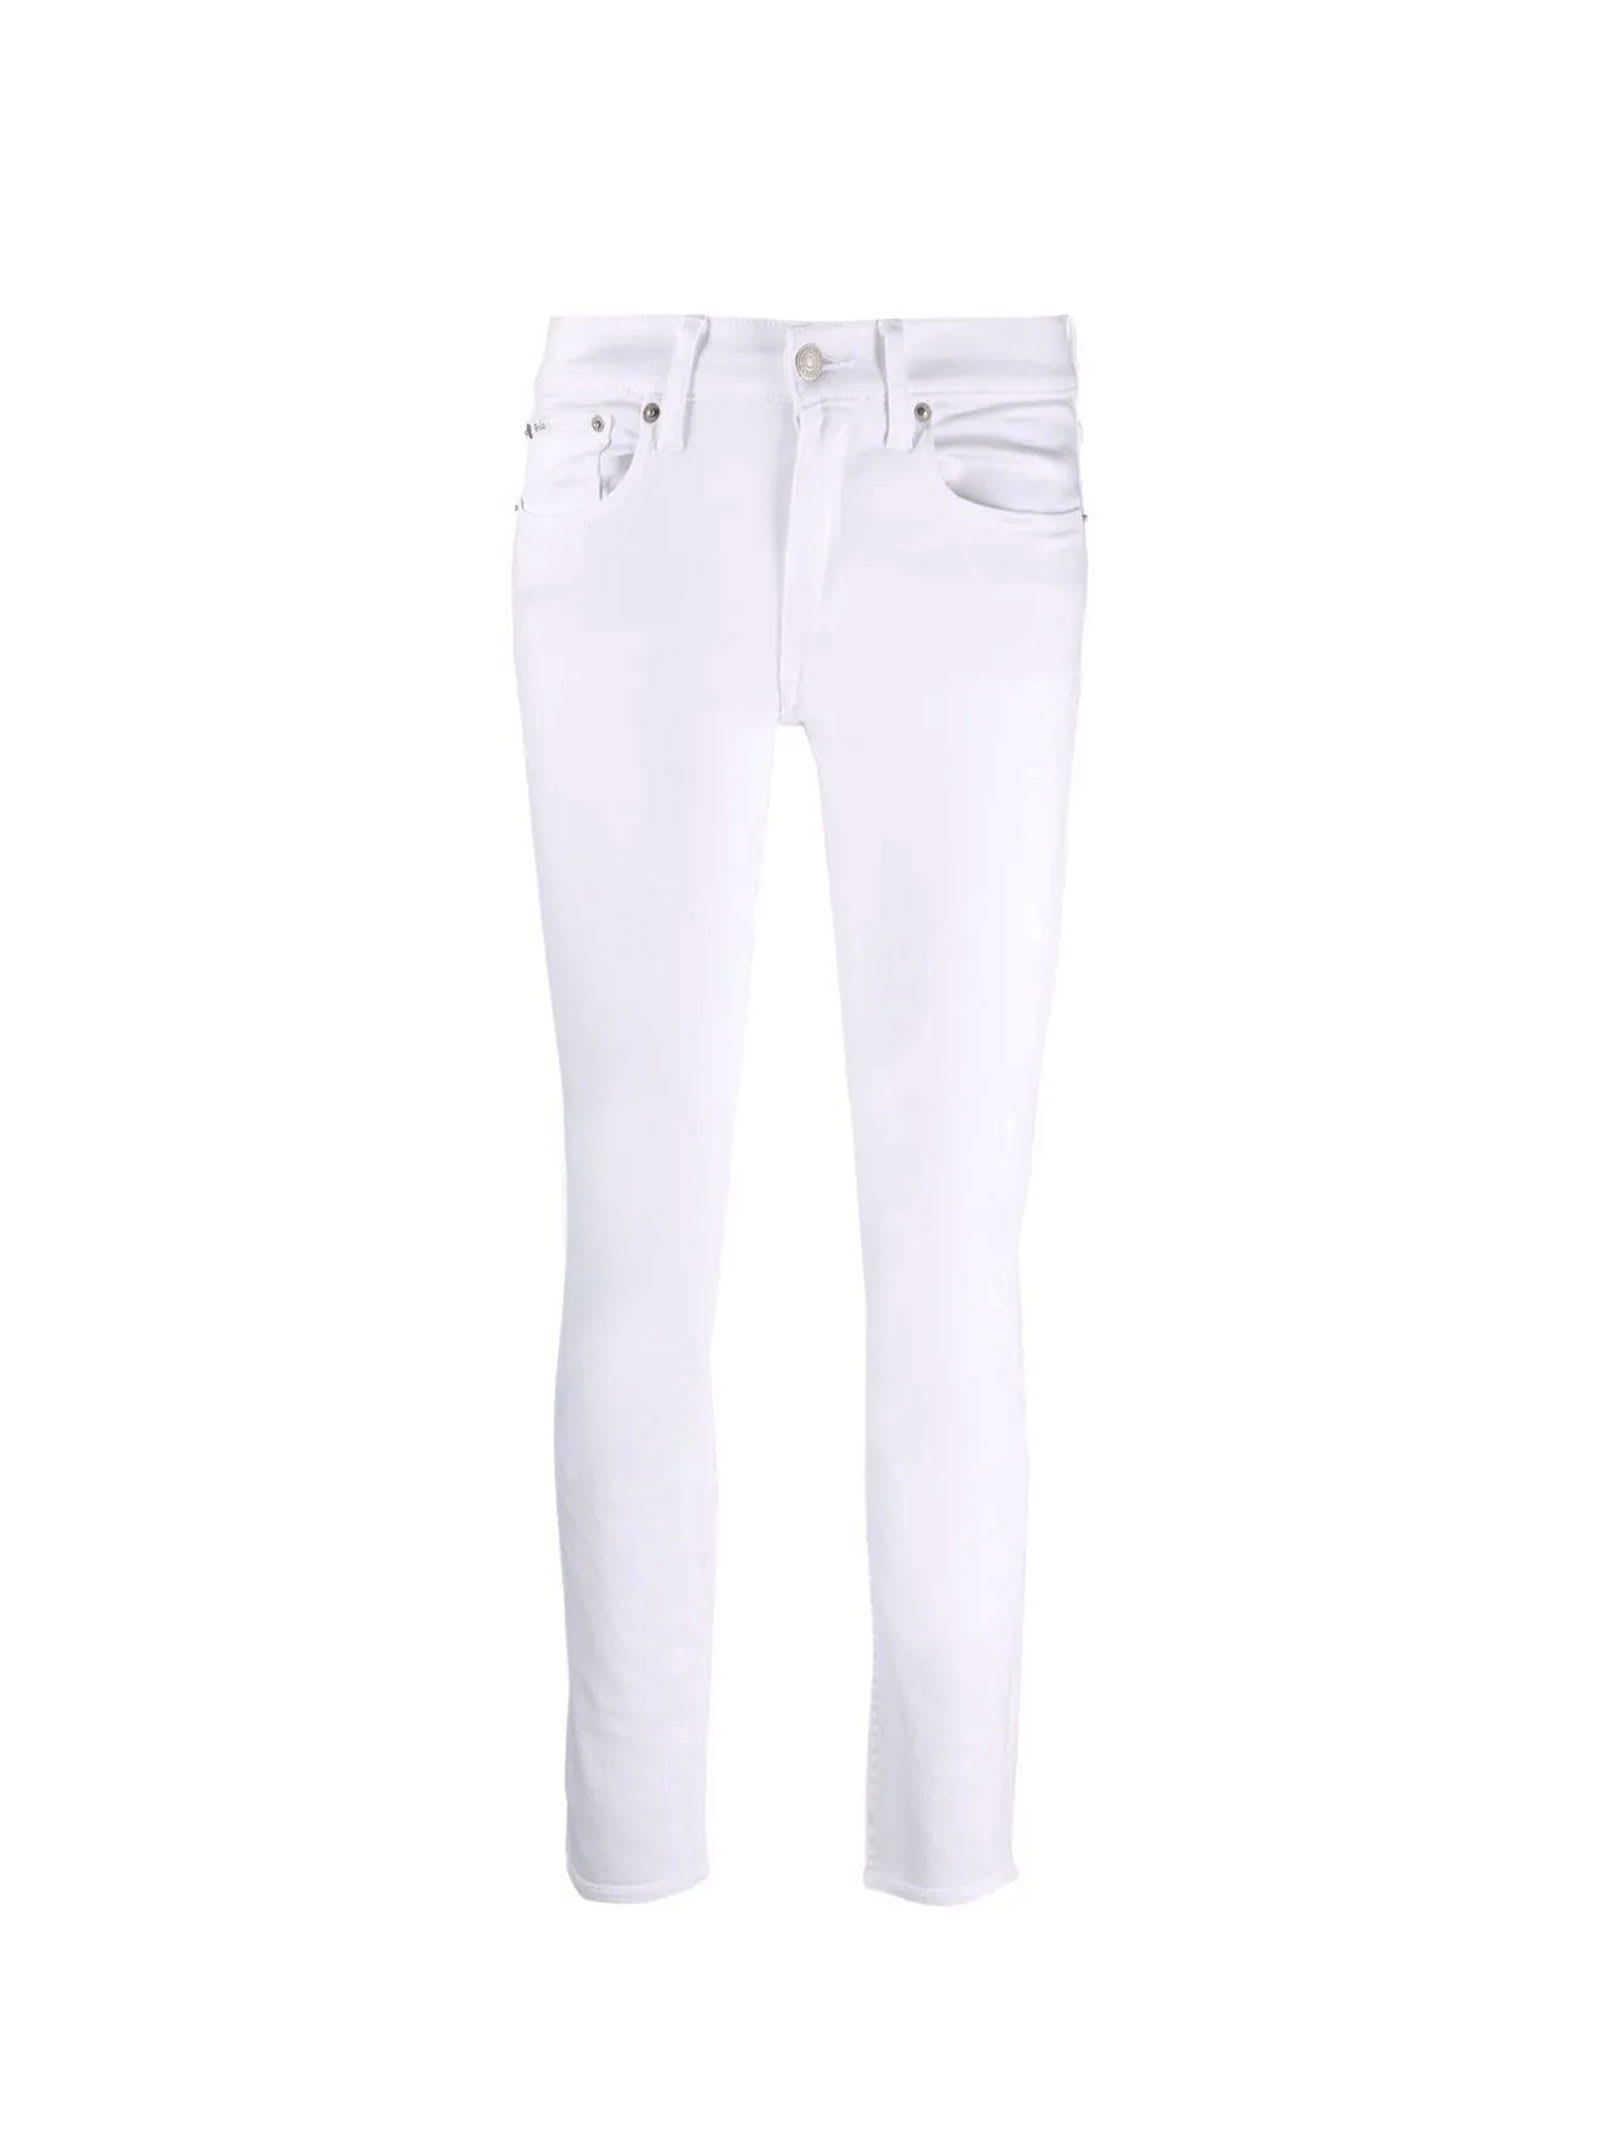 Polo Ralph Lauren 5-pocket Cotton Jeans